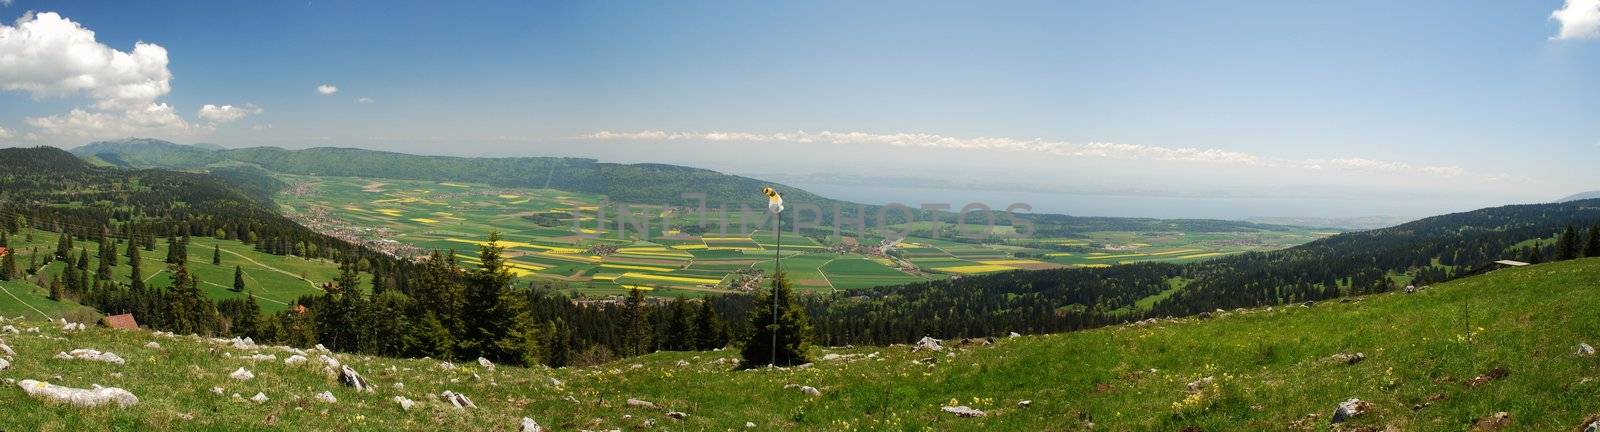 Panorama of Neuchatel region seen from Tete de Run by dariya64